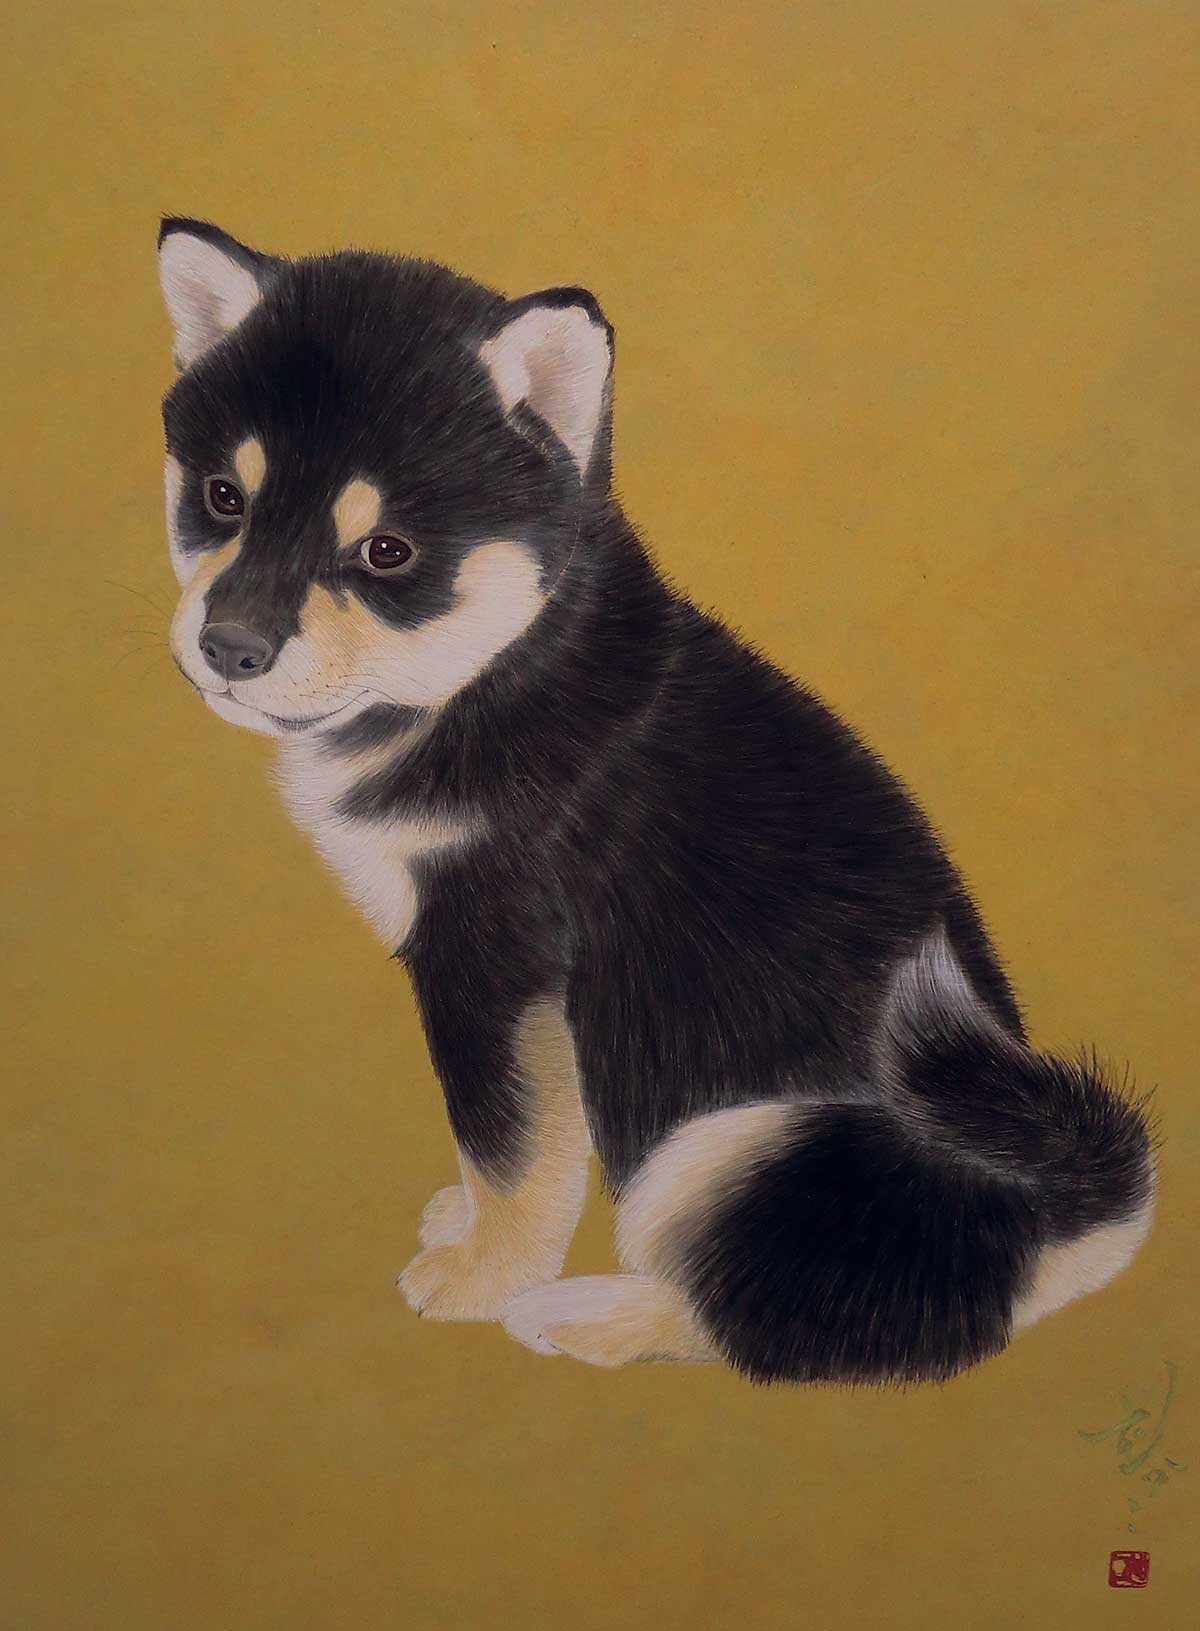 仙台アート 犬もネコも 動物たちの姿に癒される 癒しの空間 動物を描く作品展 開催中 日刊せんだいタウン情報s Style Web